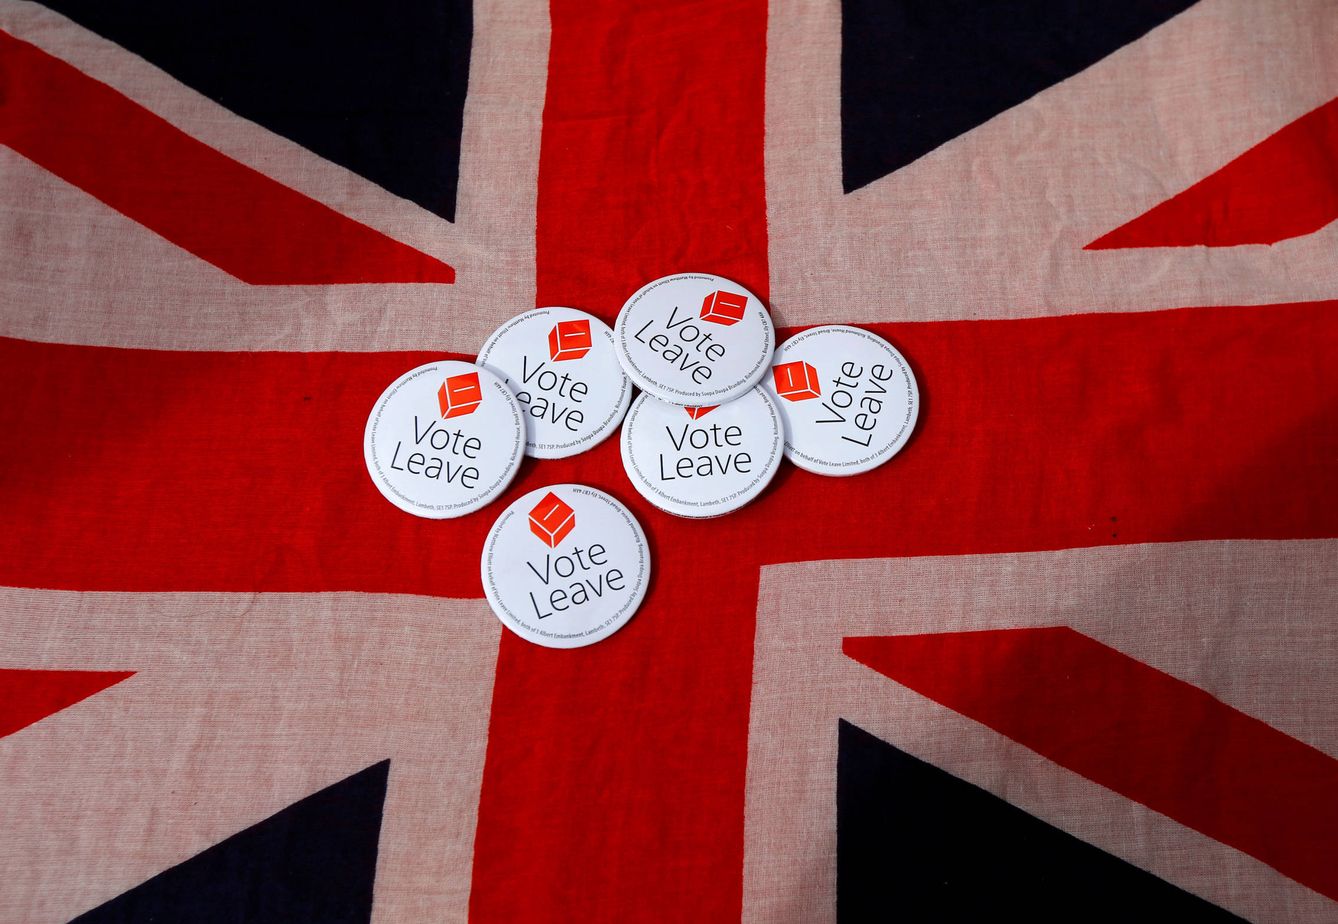 Chapas a favor del Brexit sobre una bandera del Reino Unido. (Reuters)